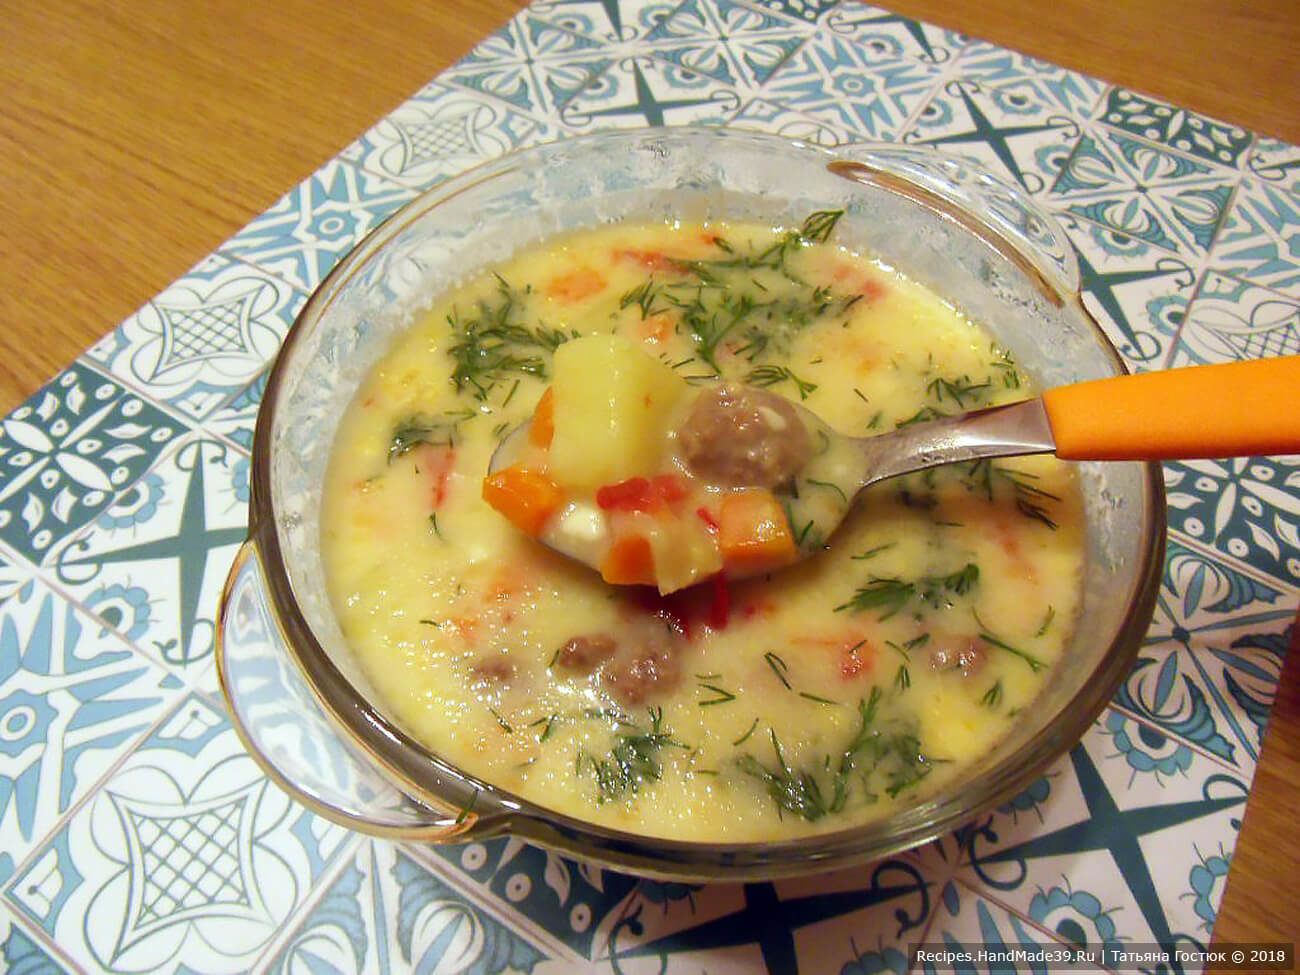 Рецепт: Суп из плавленных сырков - Легко приготовляемый и очень аппетитный